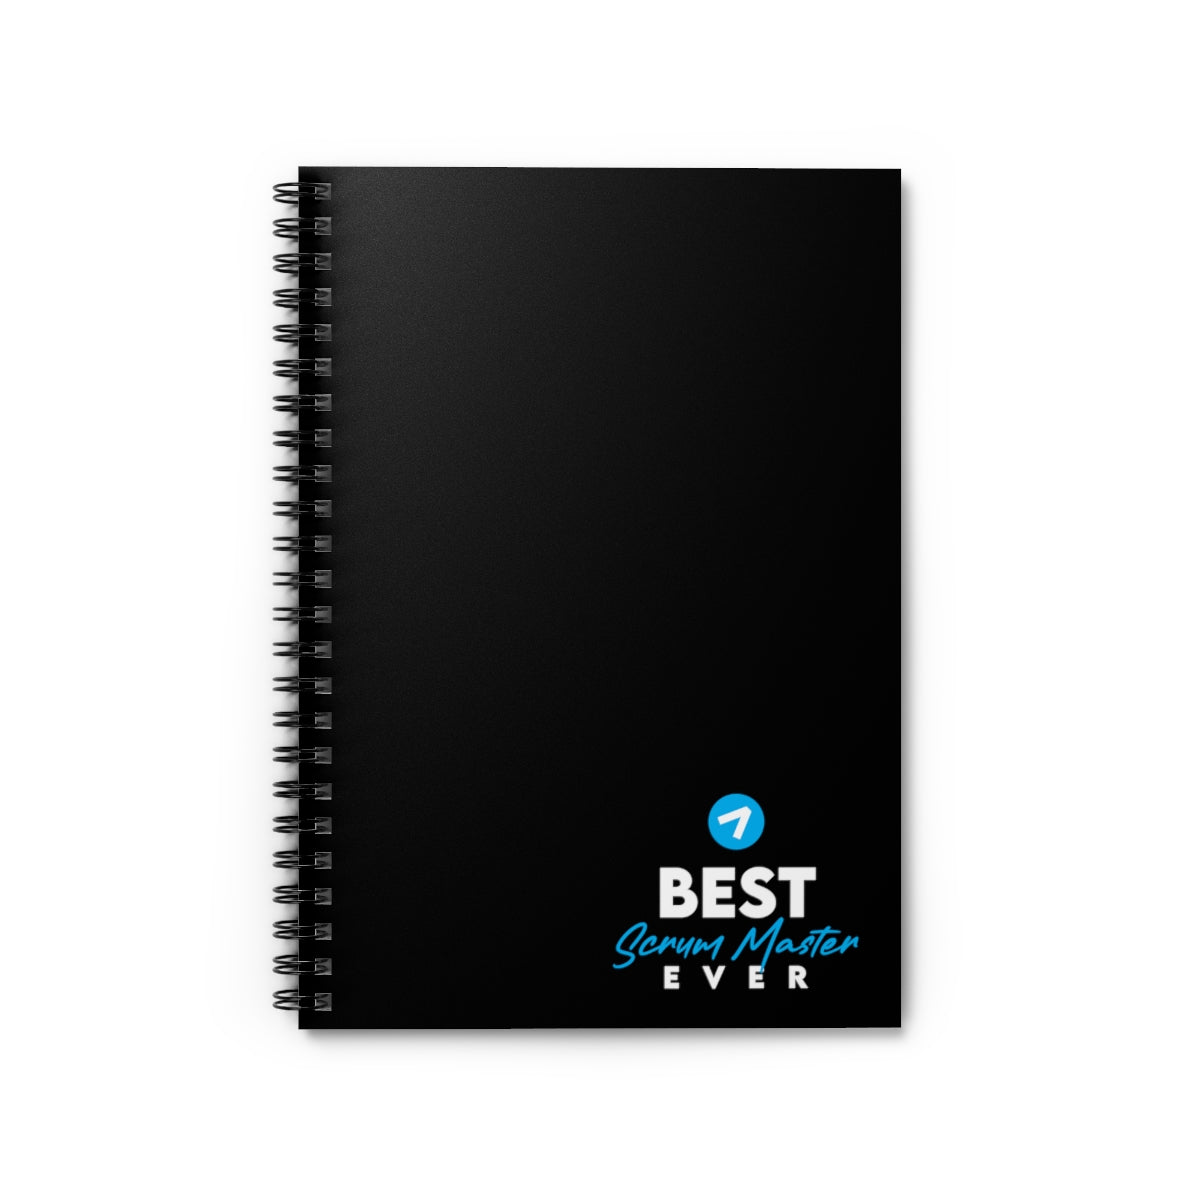 El mejor Scrum Master de todos los tiempos - Negro azul - Cuaderno de espiral - Línea reglada